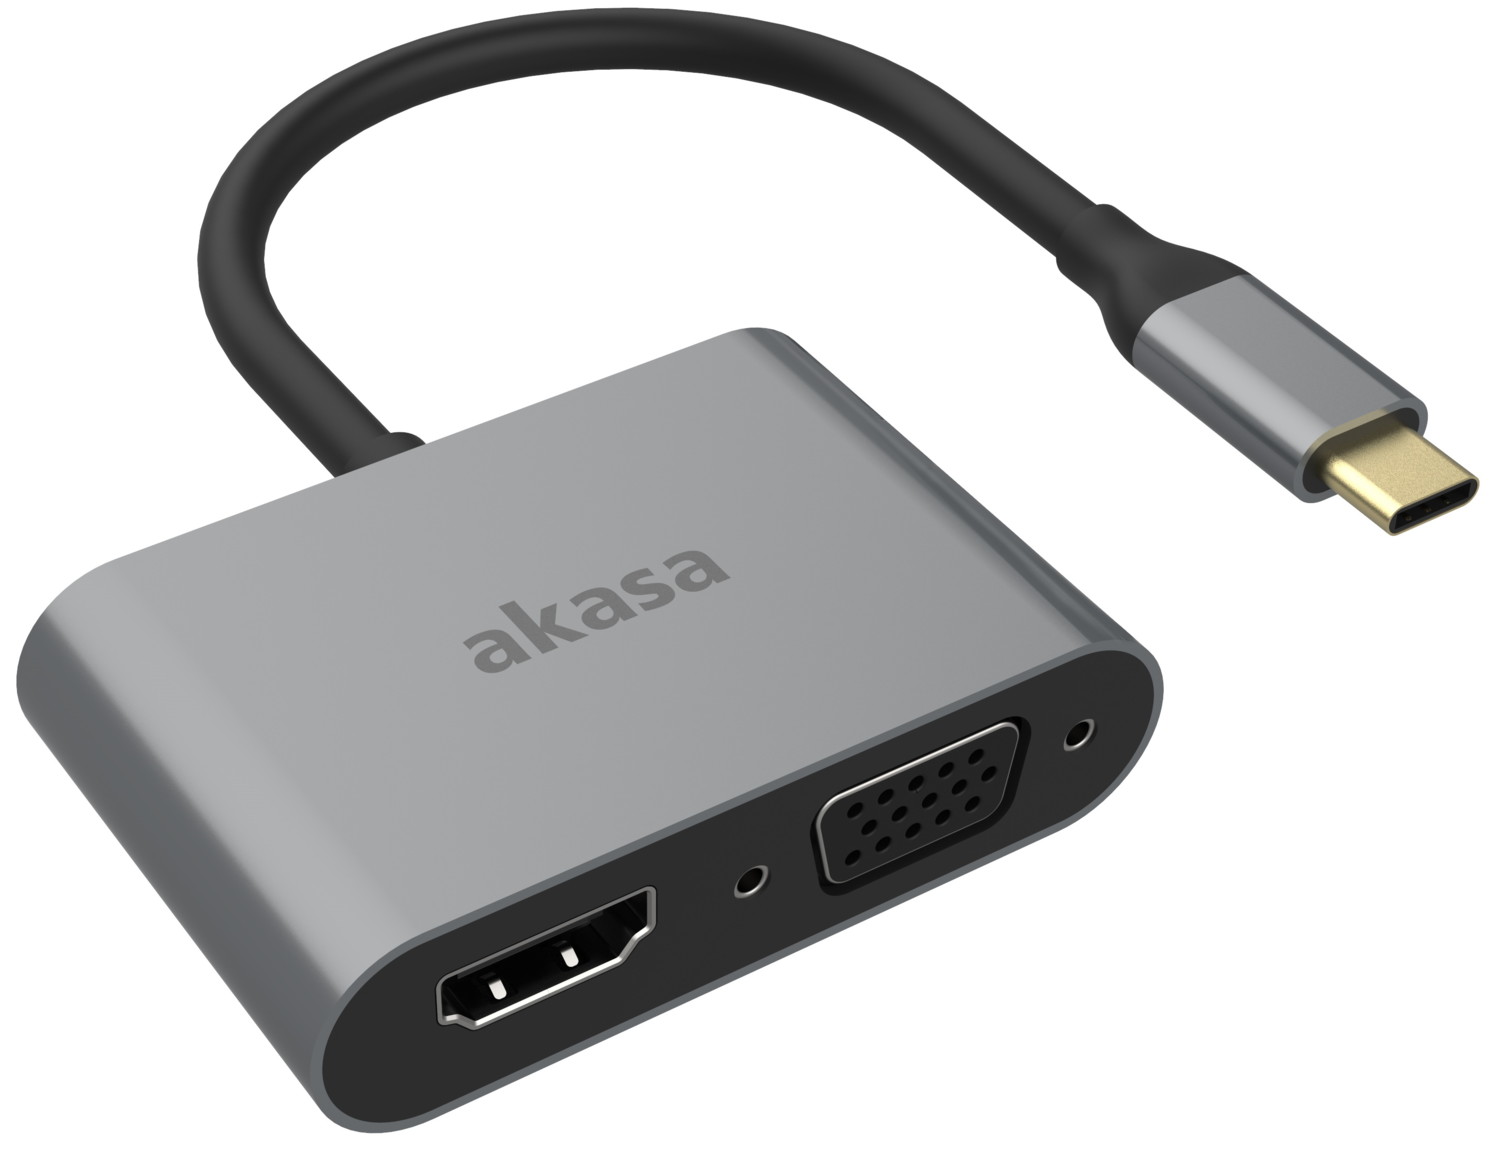 Adaptateur USB-C - HDMI et VGA, Hubs USB-C